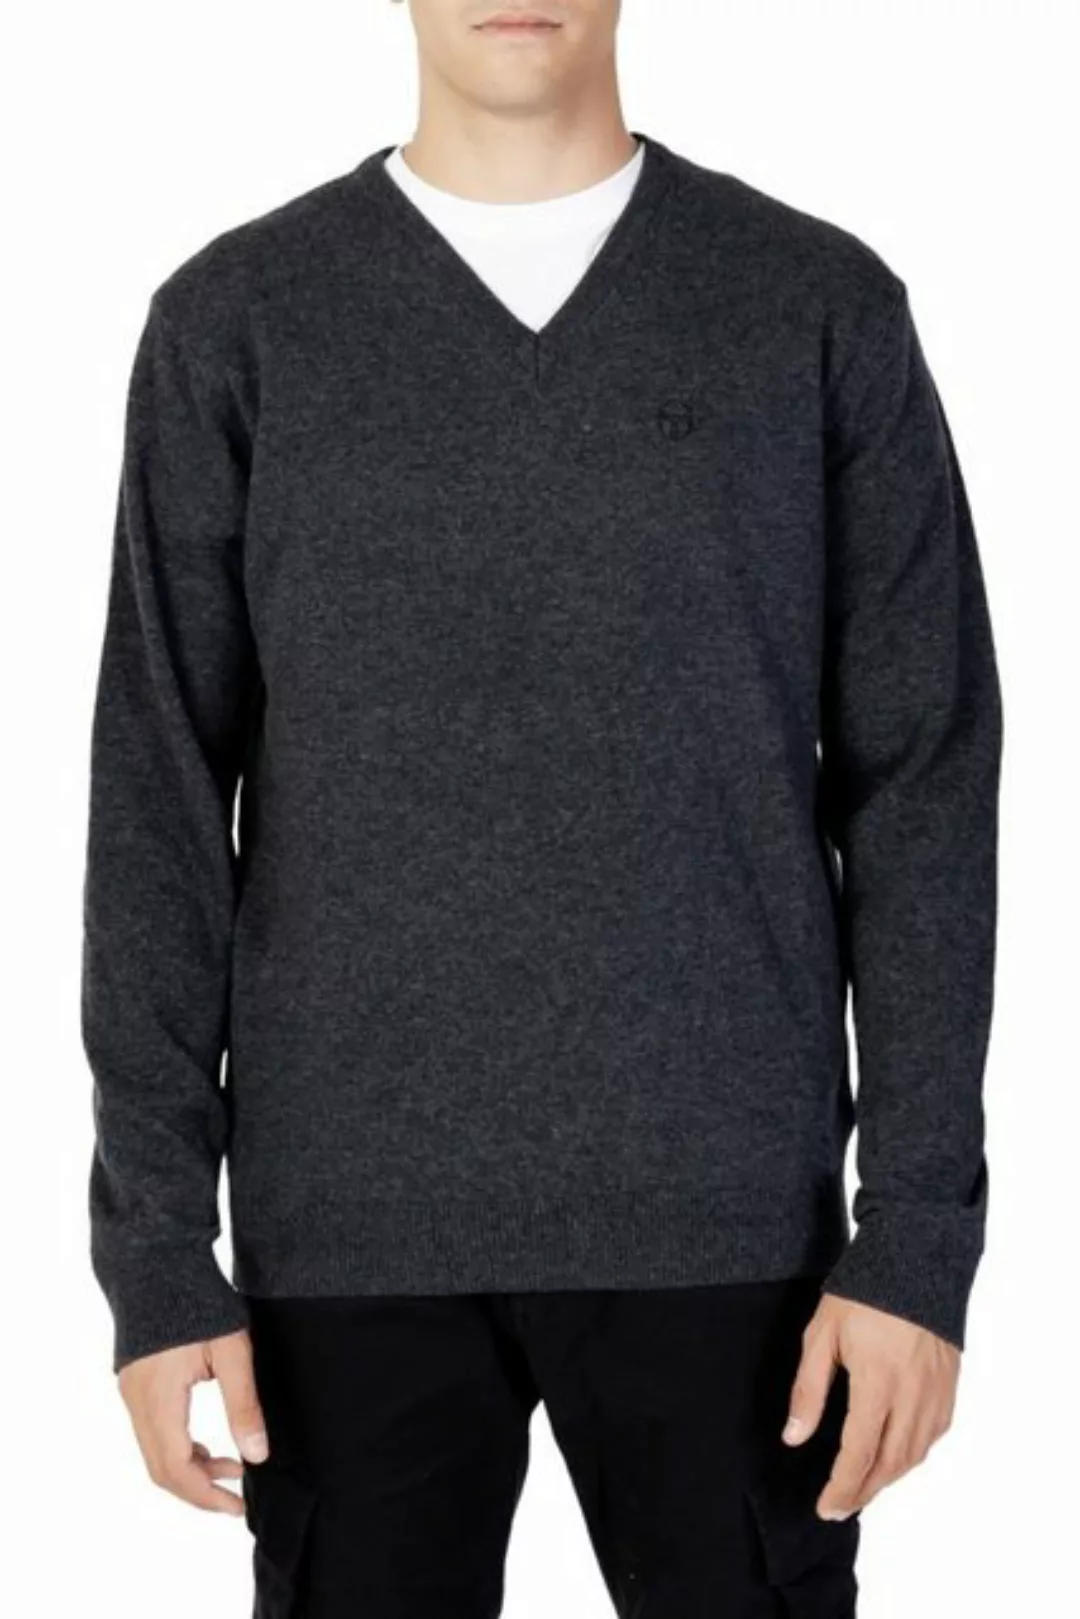 Sergio Tacchini Sweatshirt günstig online kaufen